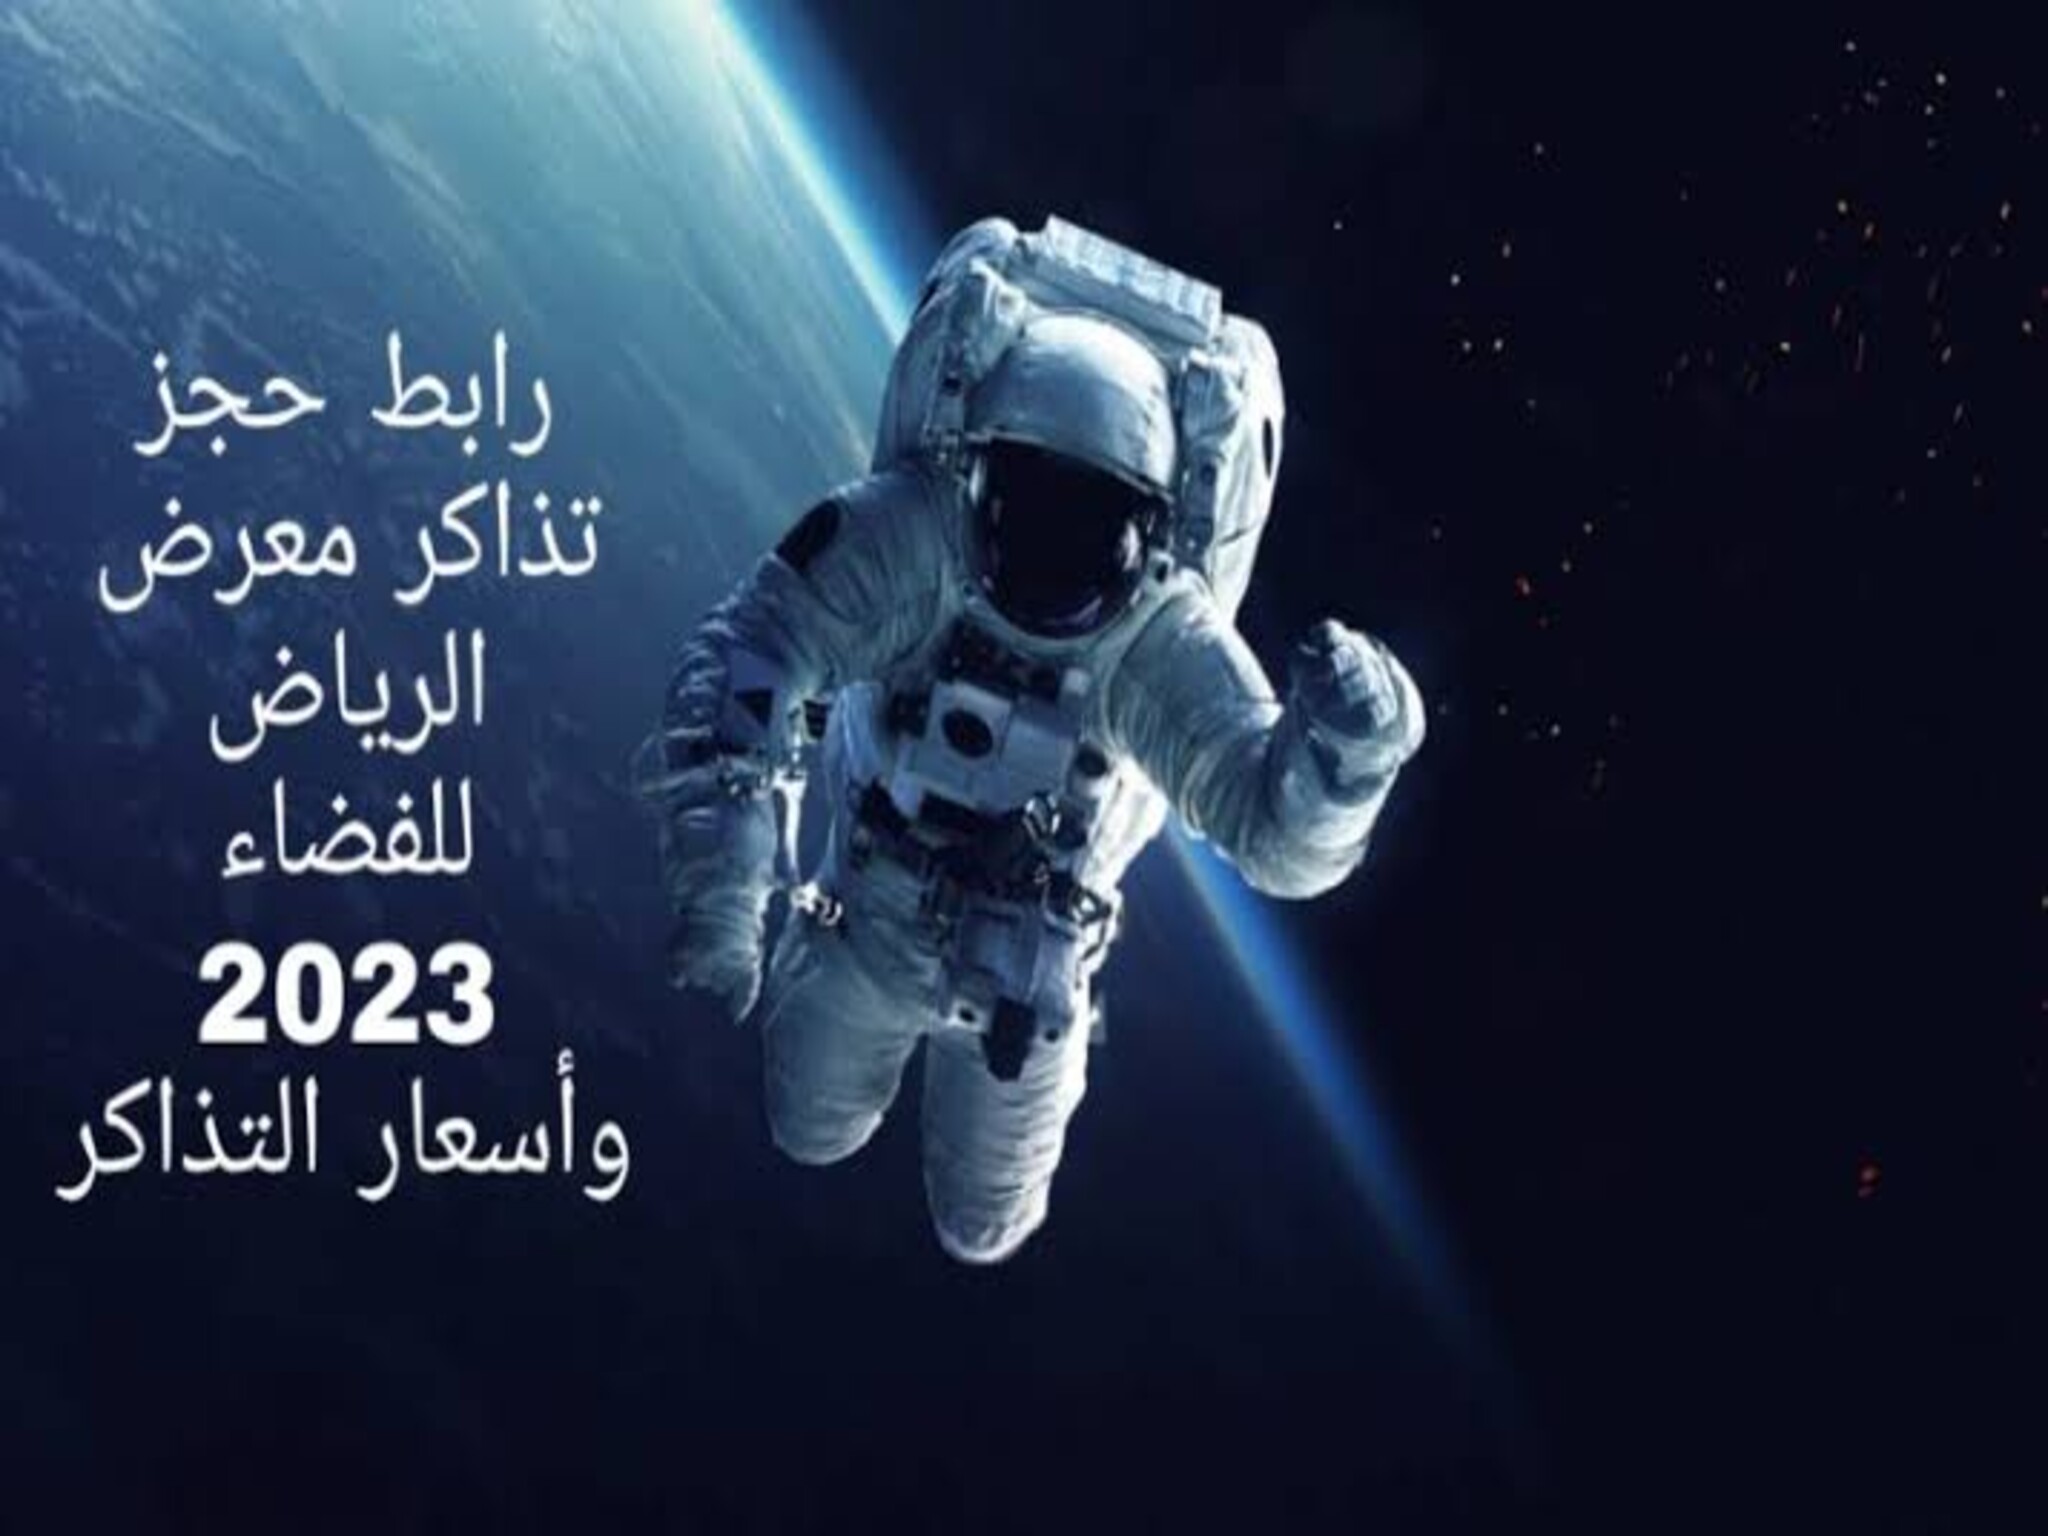 كيفية حجز تذاكر معرض السعودية للفضاء المجانية 2023/1444